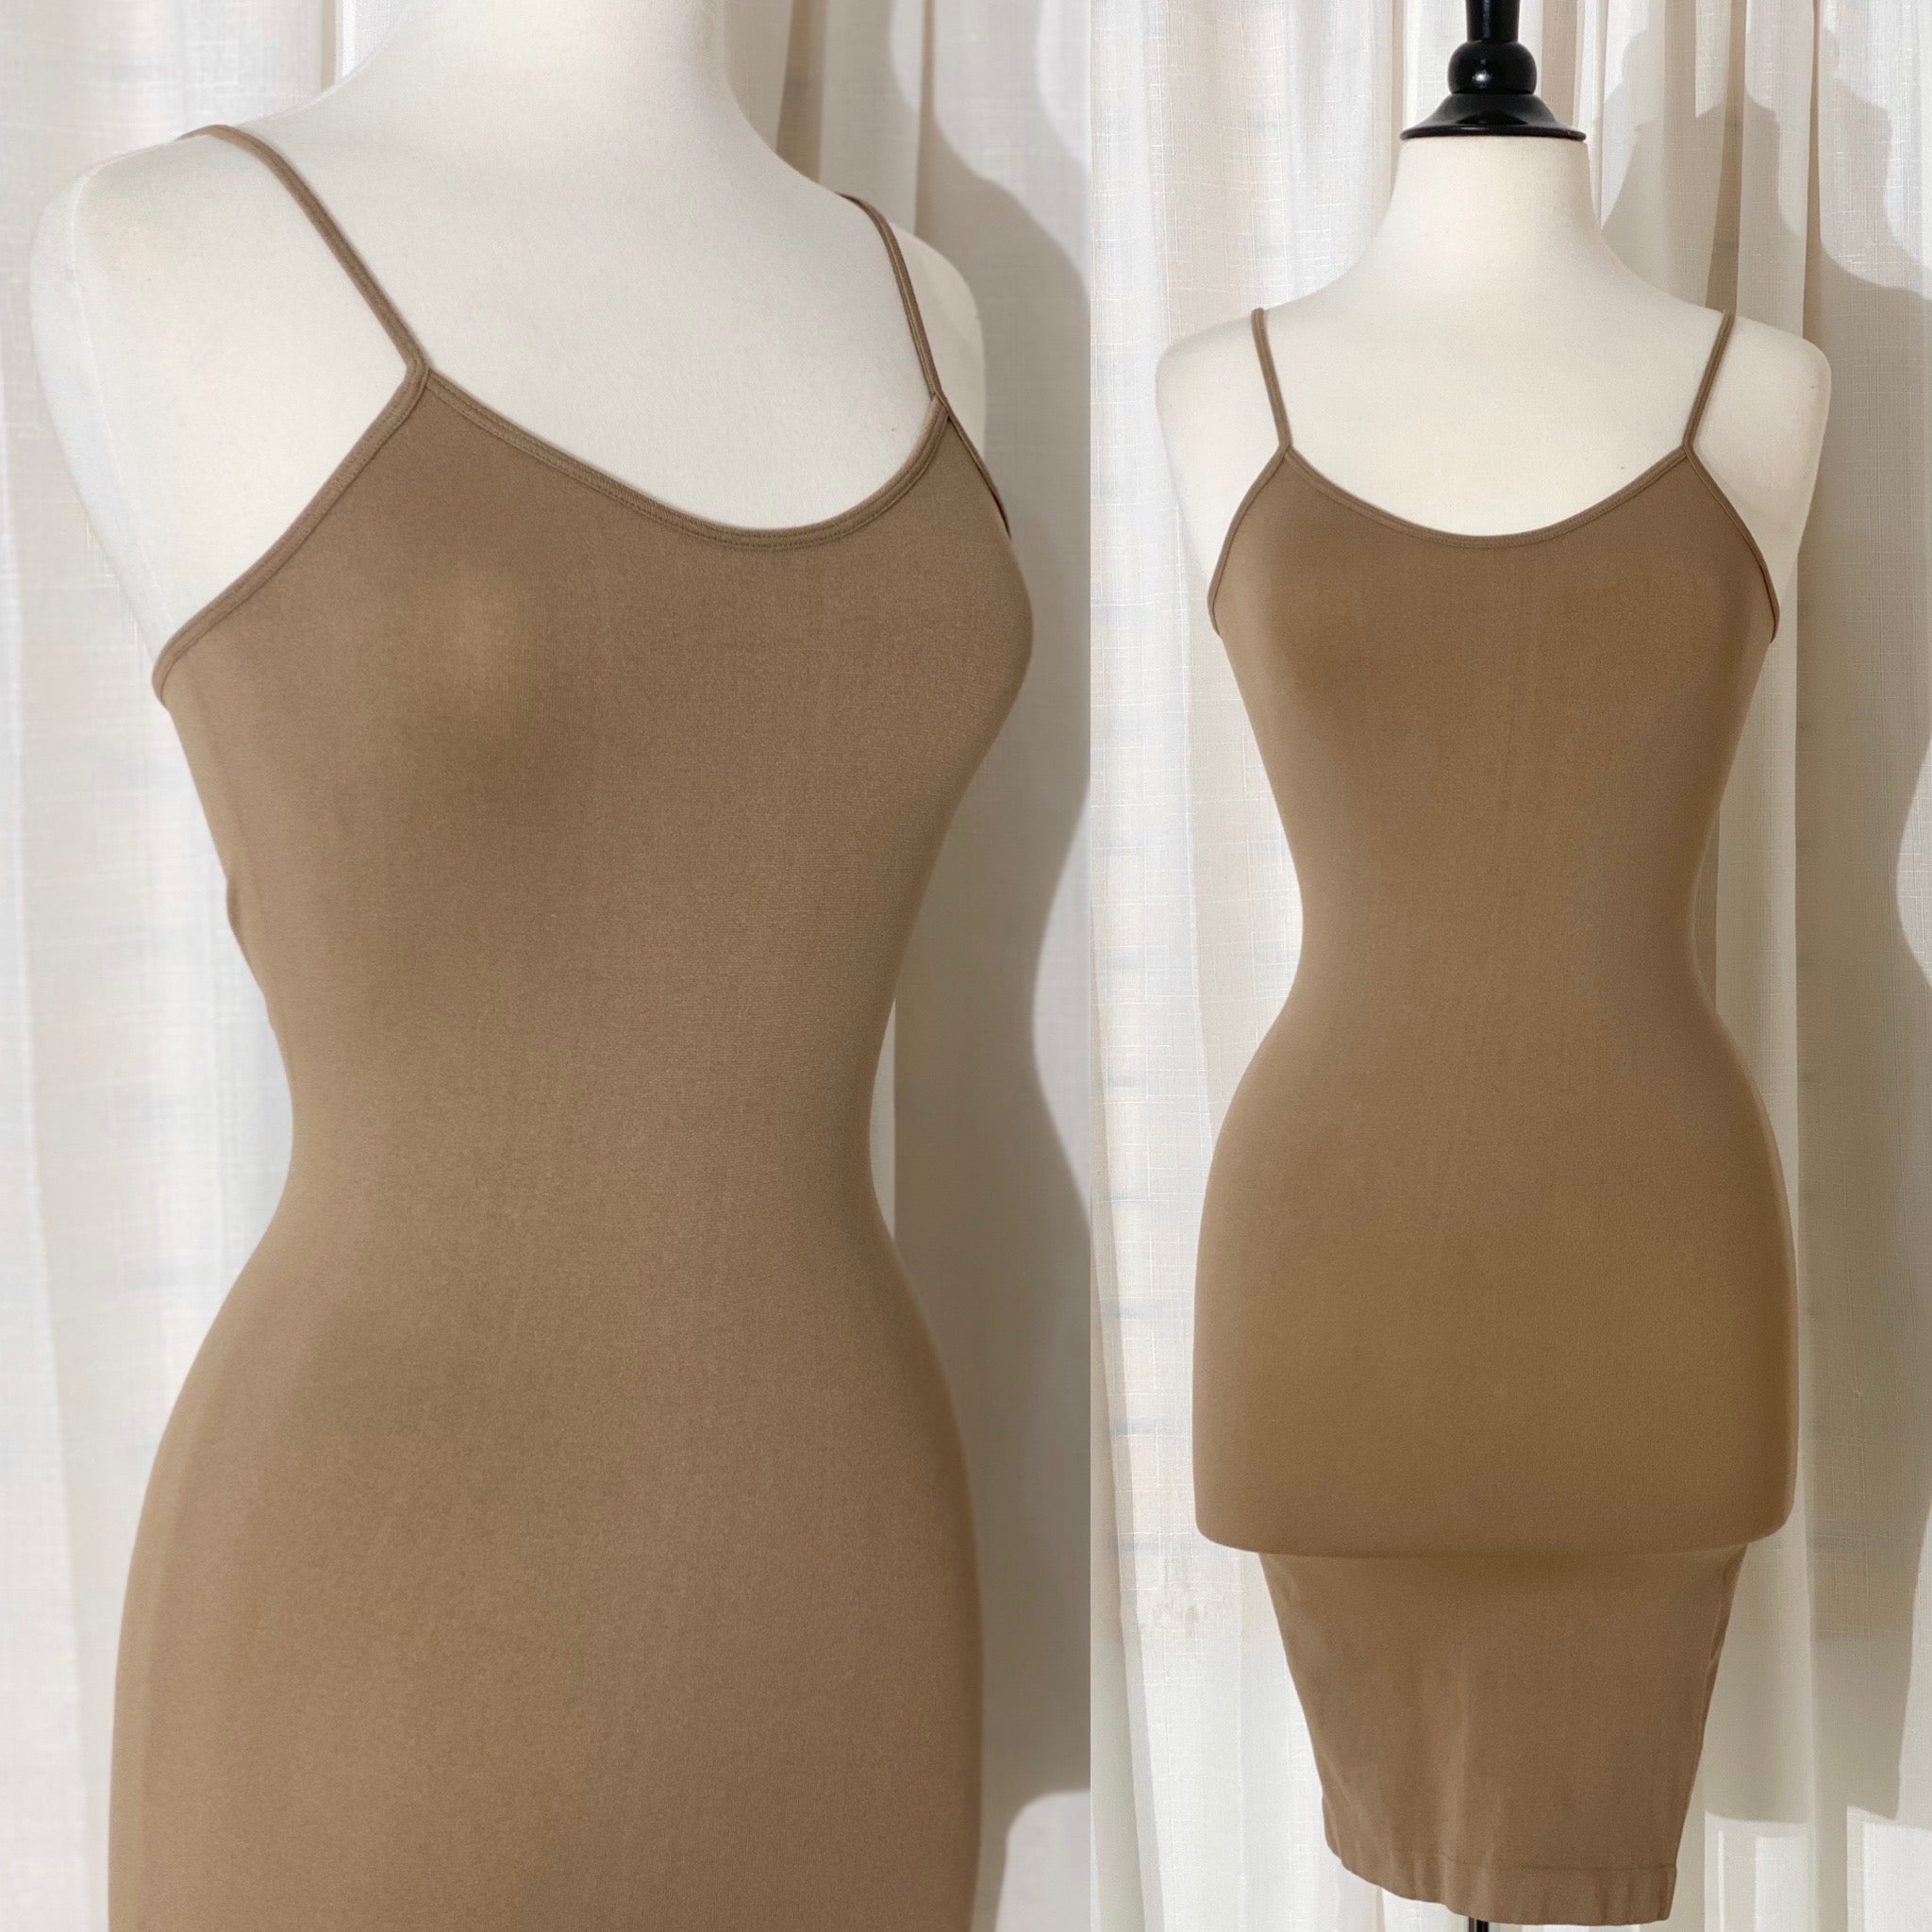 The “Kims” Mocha Nude Spandex Dress